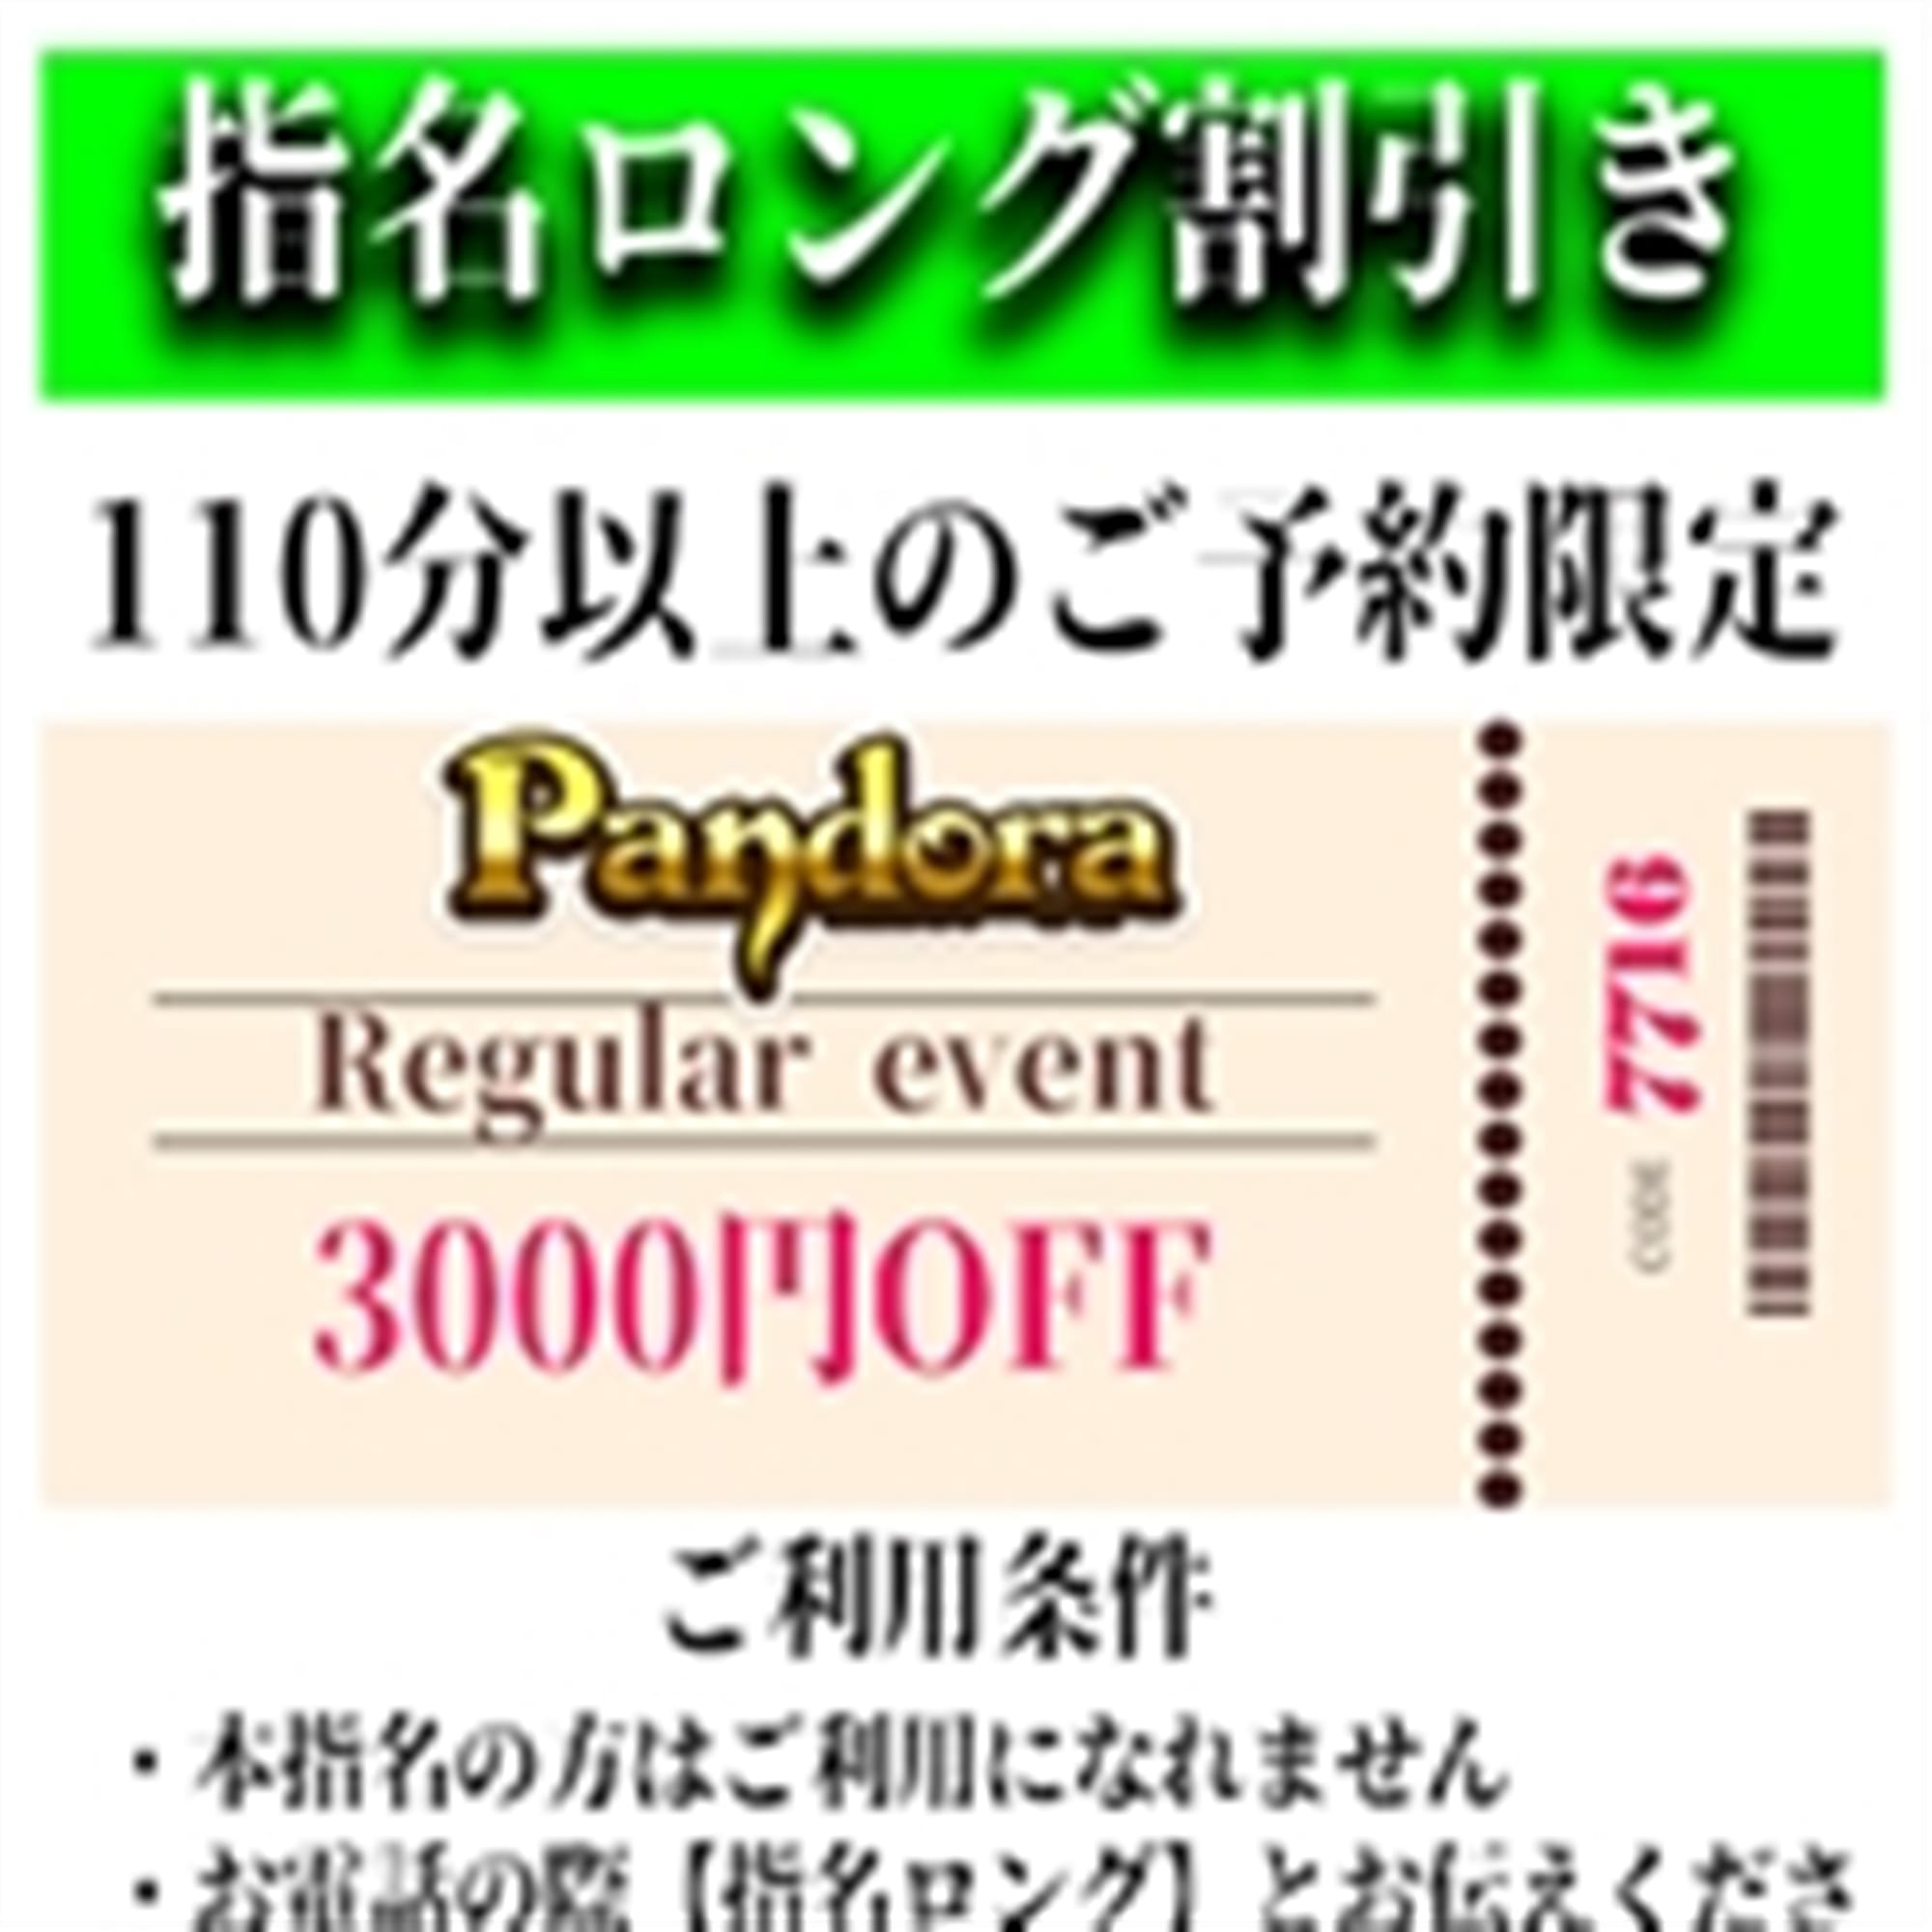 「ご指名のお客様も遊べるロングコース割引」04/26(金) 01:49 | Pandora(パンドラ)新潟のお得なニュース